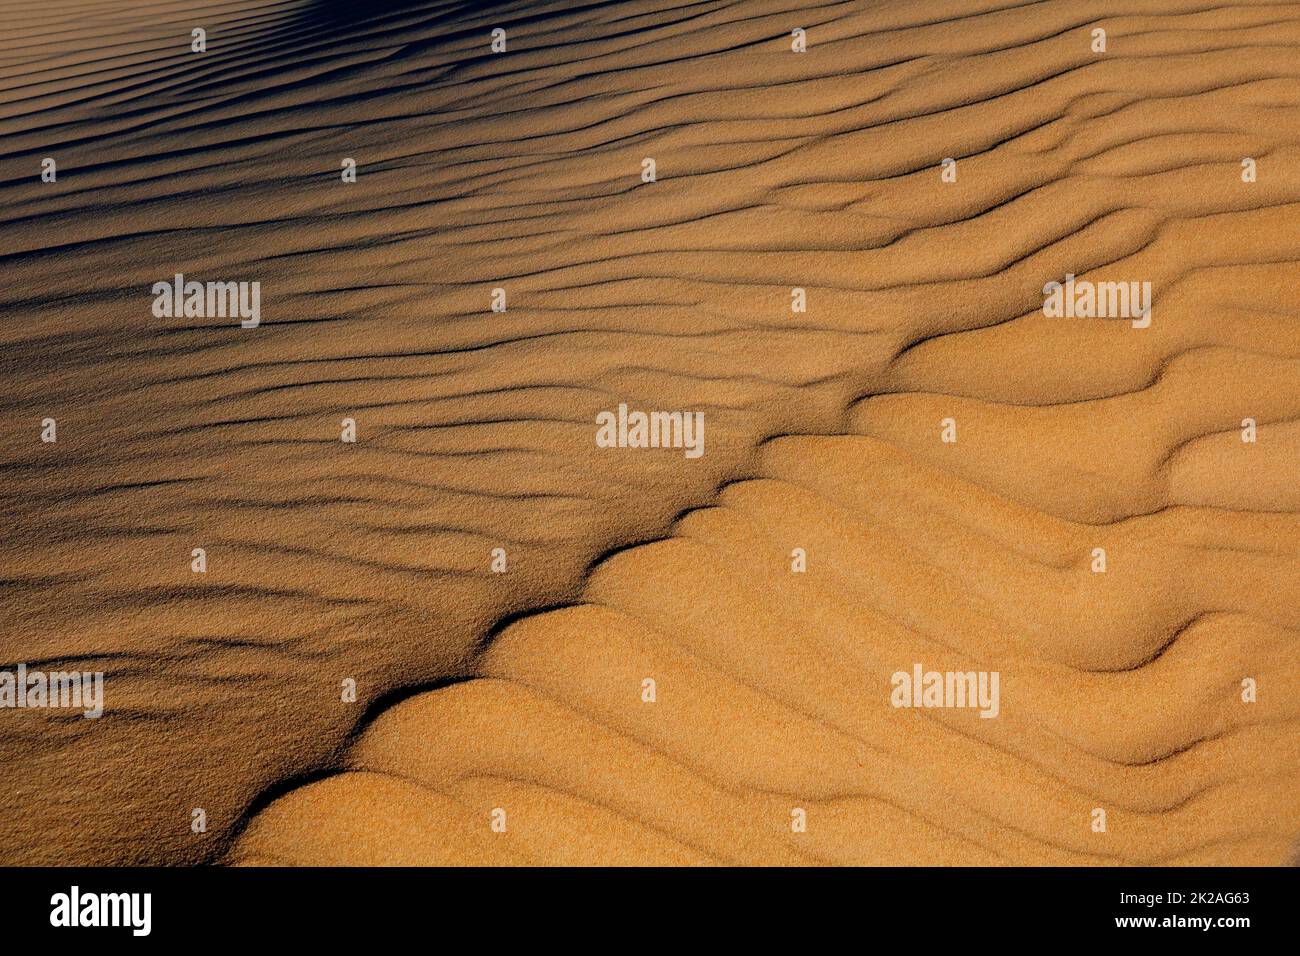 Modelli e texture nella sabbia Foto Stock